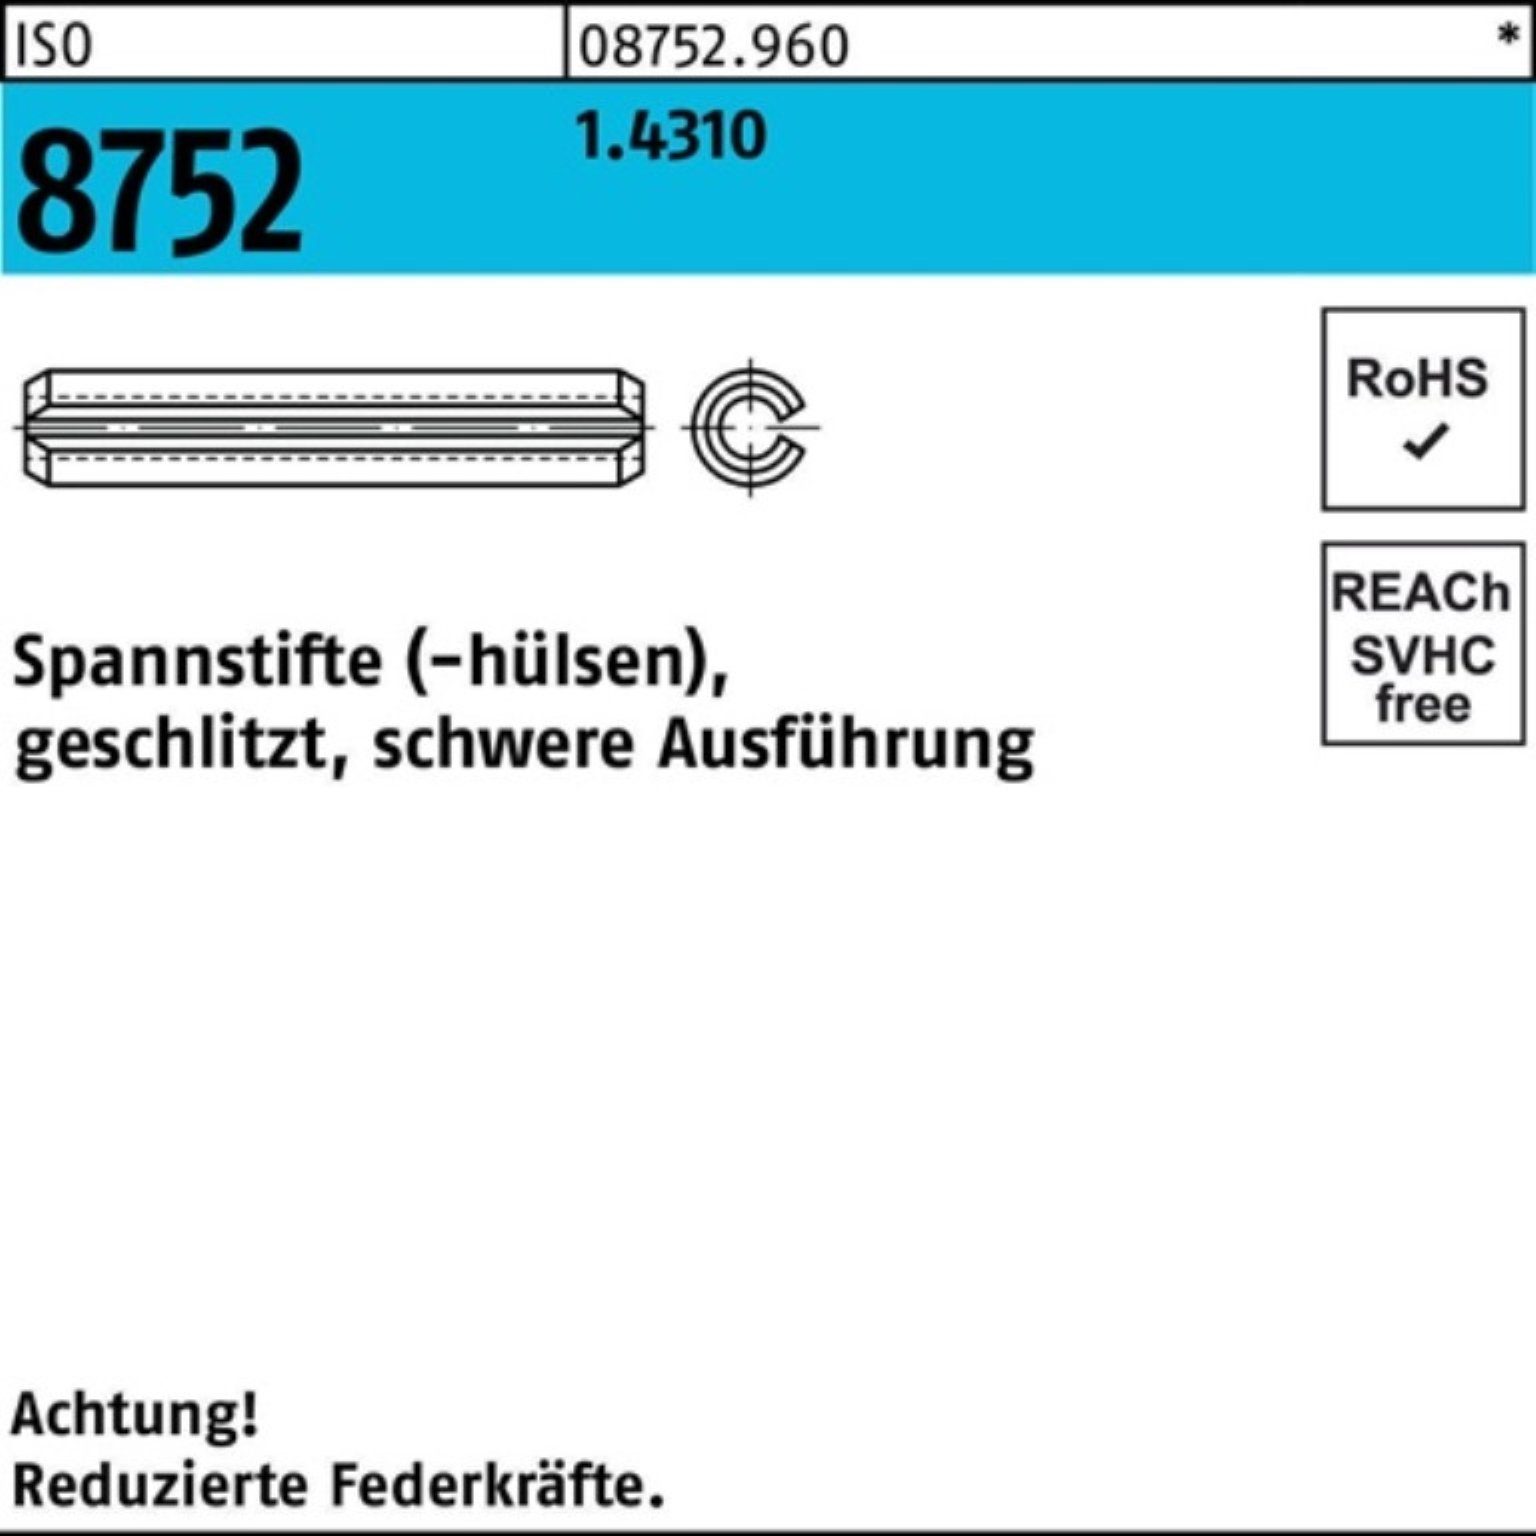 8752 28 schwere ISO Ausf. geschlitzt Reyher 5 Pack Spannstift Spannstift 5x 1.4310 100er